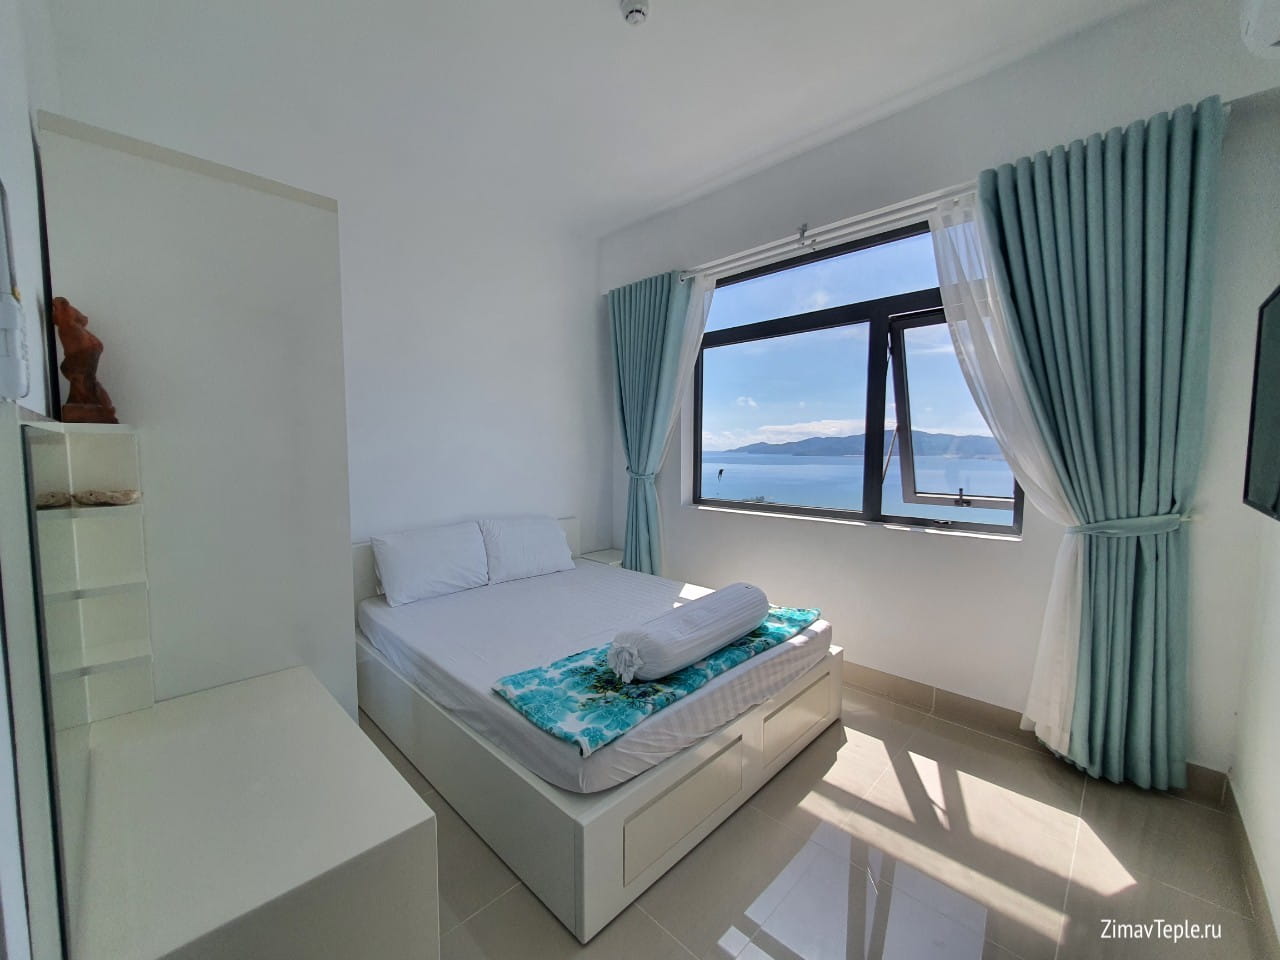 Спальня с окном на море